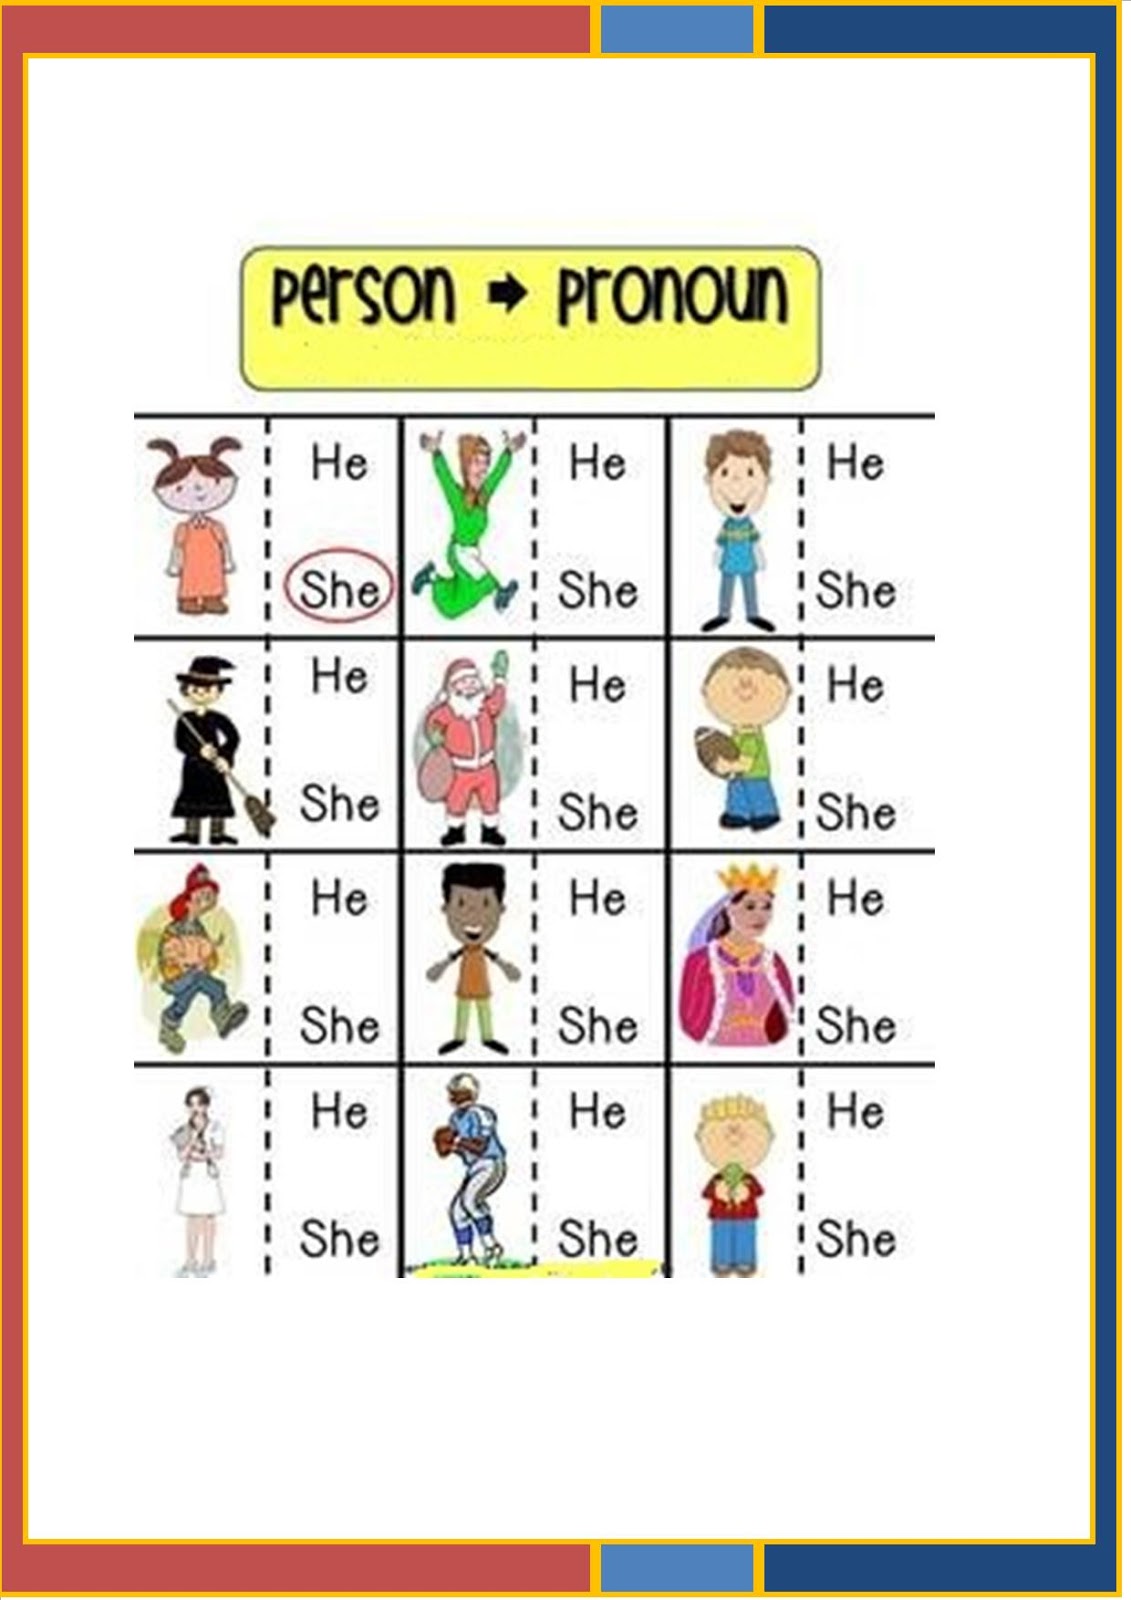 English La Trama 3 Family And Pronouns